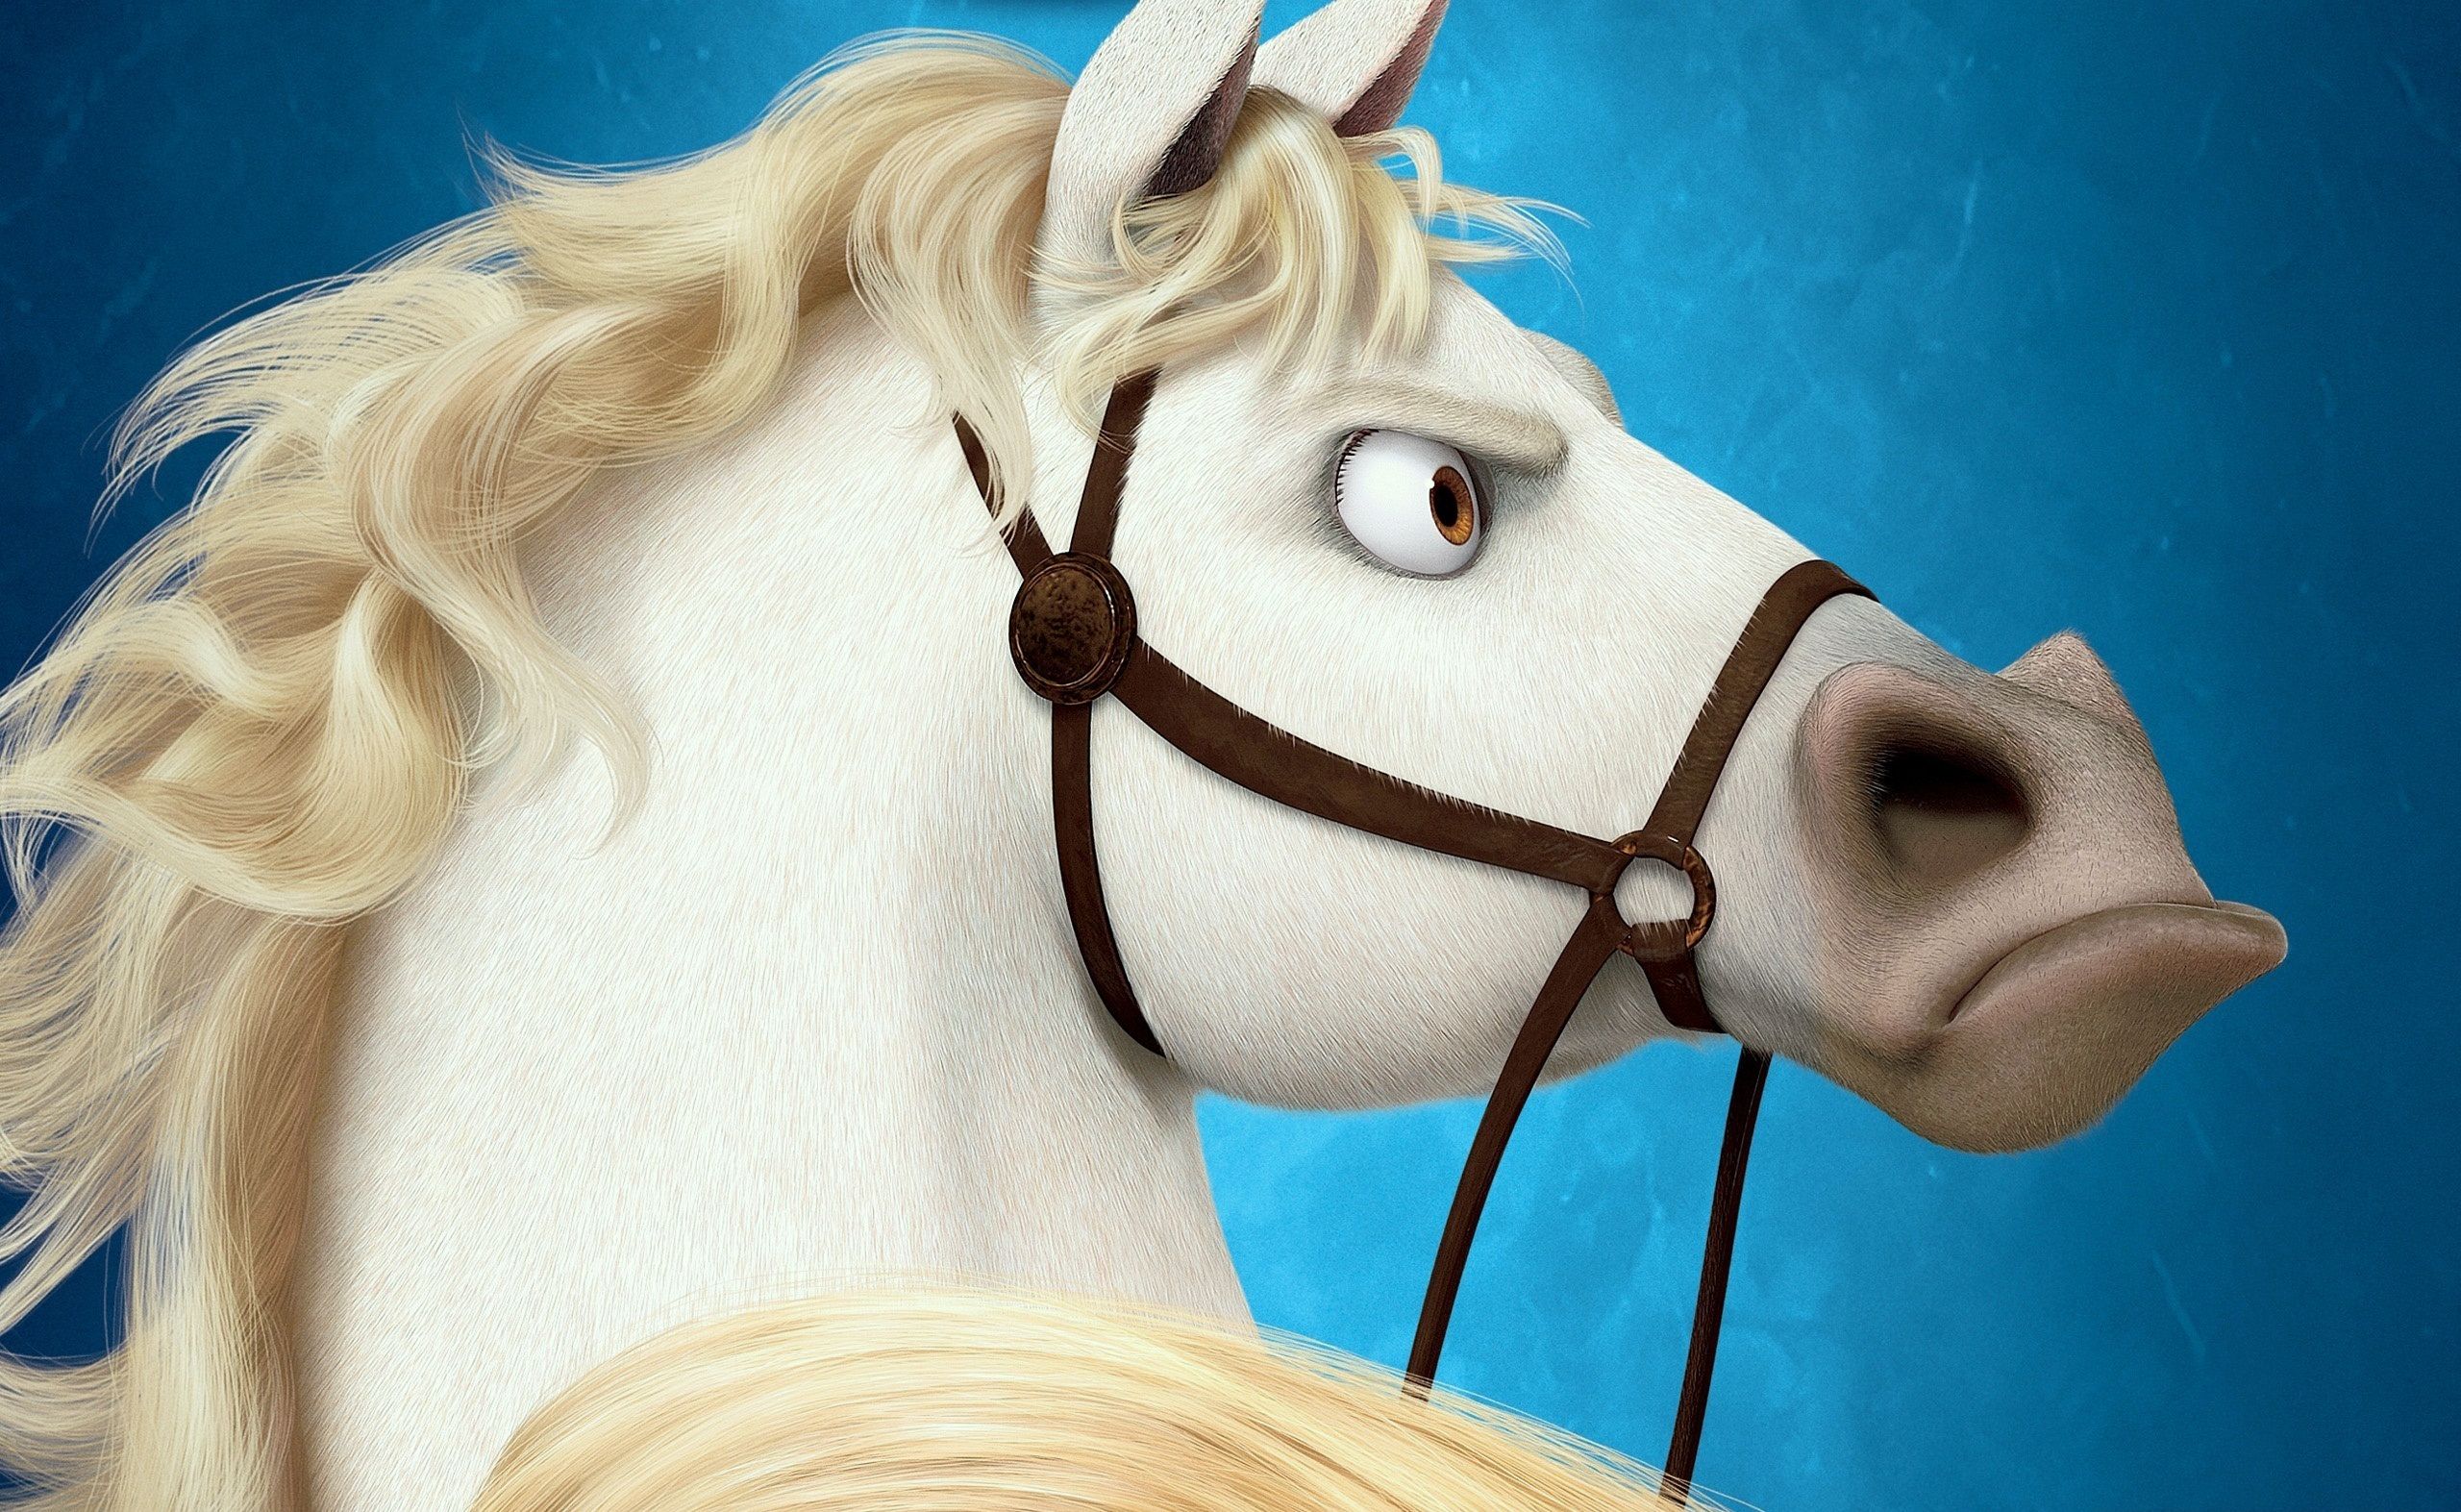 Лошадь из мультфильма Рапунцель без смс